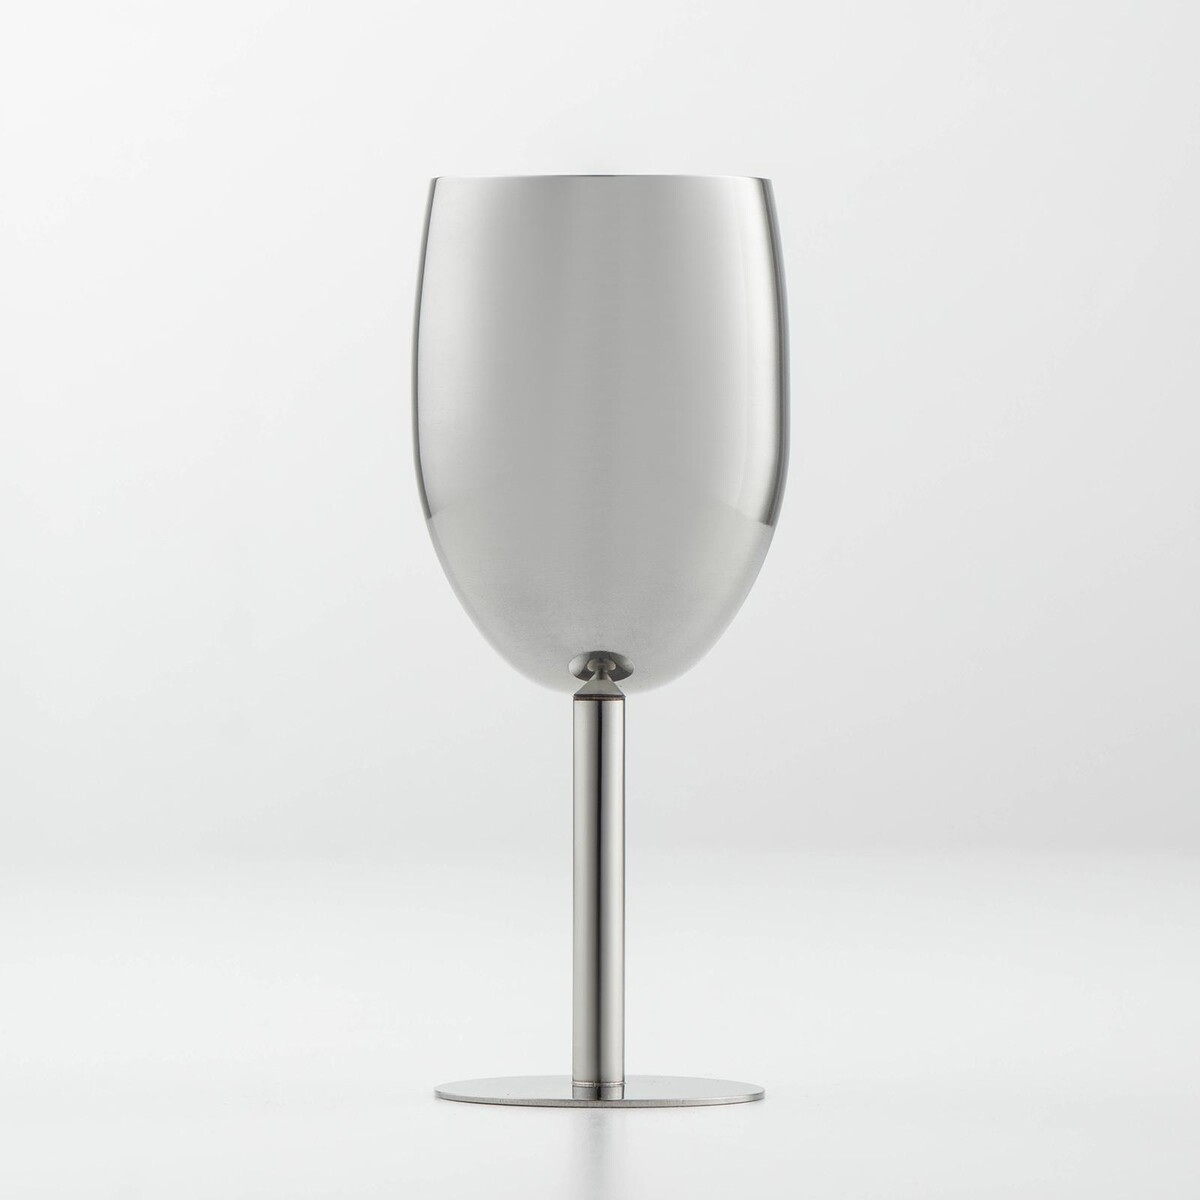 Бокал винный из нержавеющей стали для коктейлей, 17×7 см, цвет хромированный бокал для шампанского 210 мл стекло 6 шт pasabahce amber 440295b